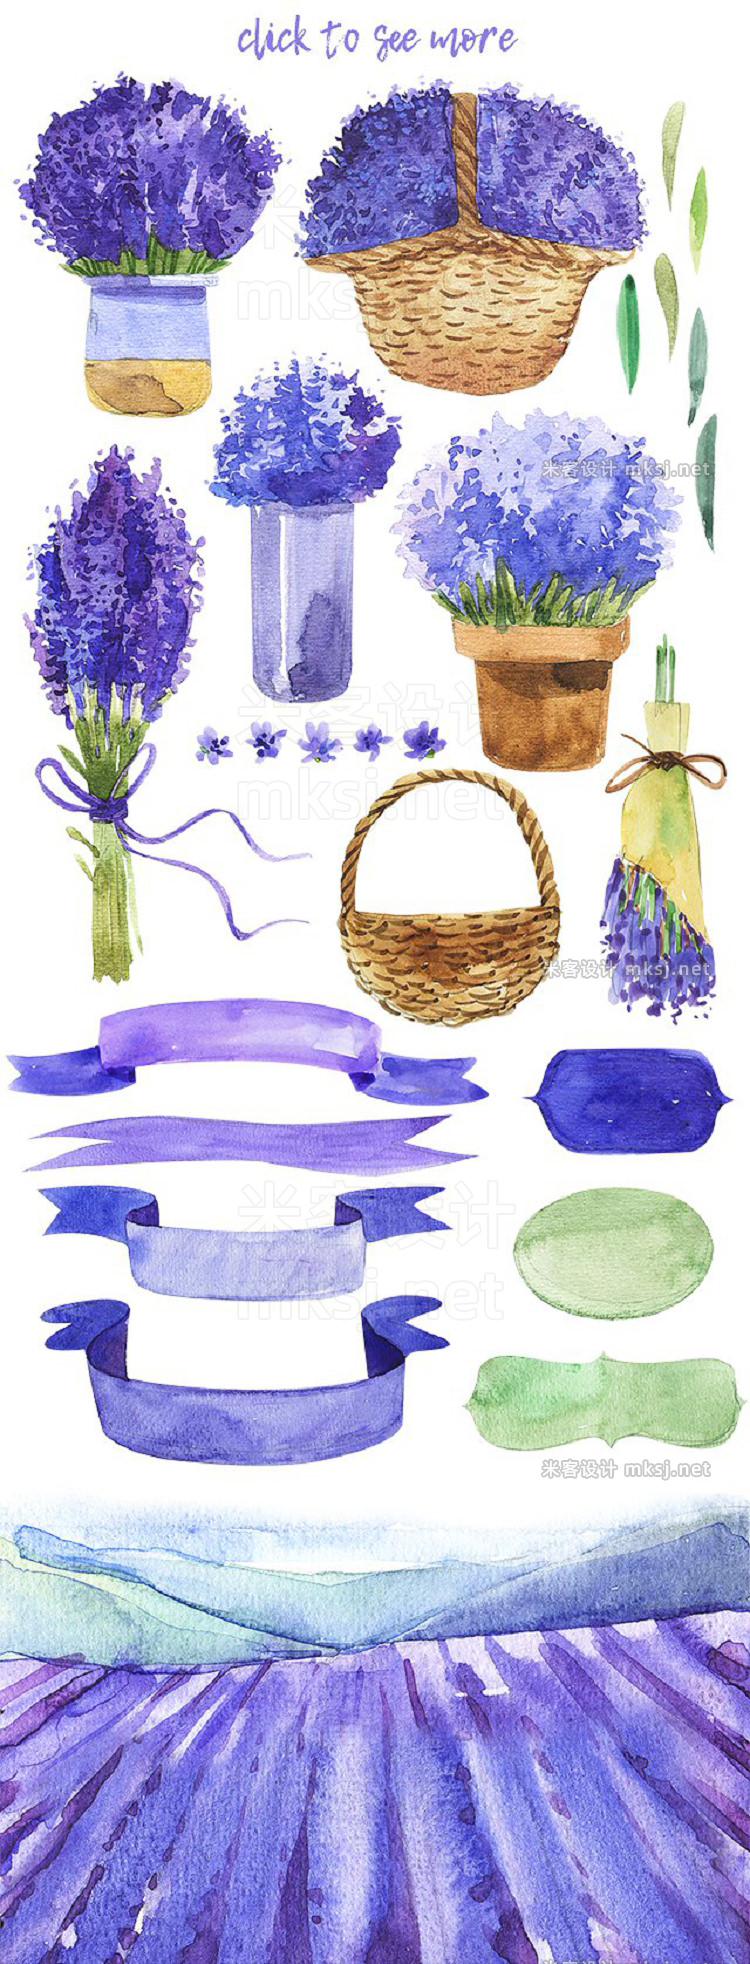 png素材 Lama Lavender-watercolor set